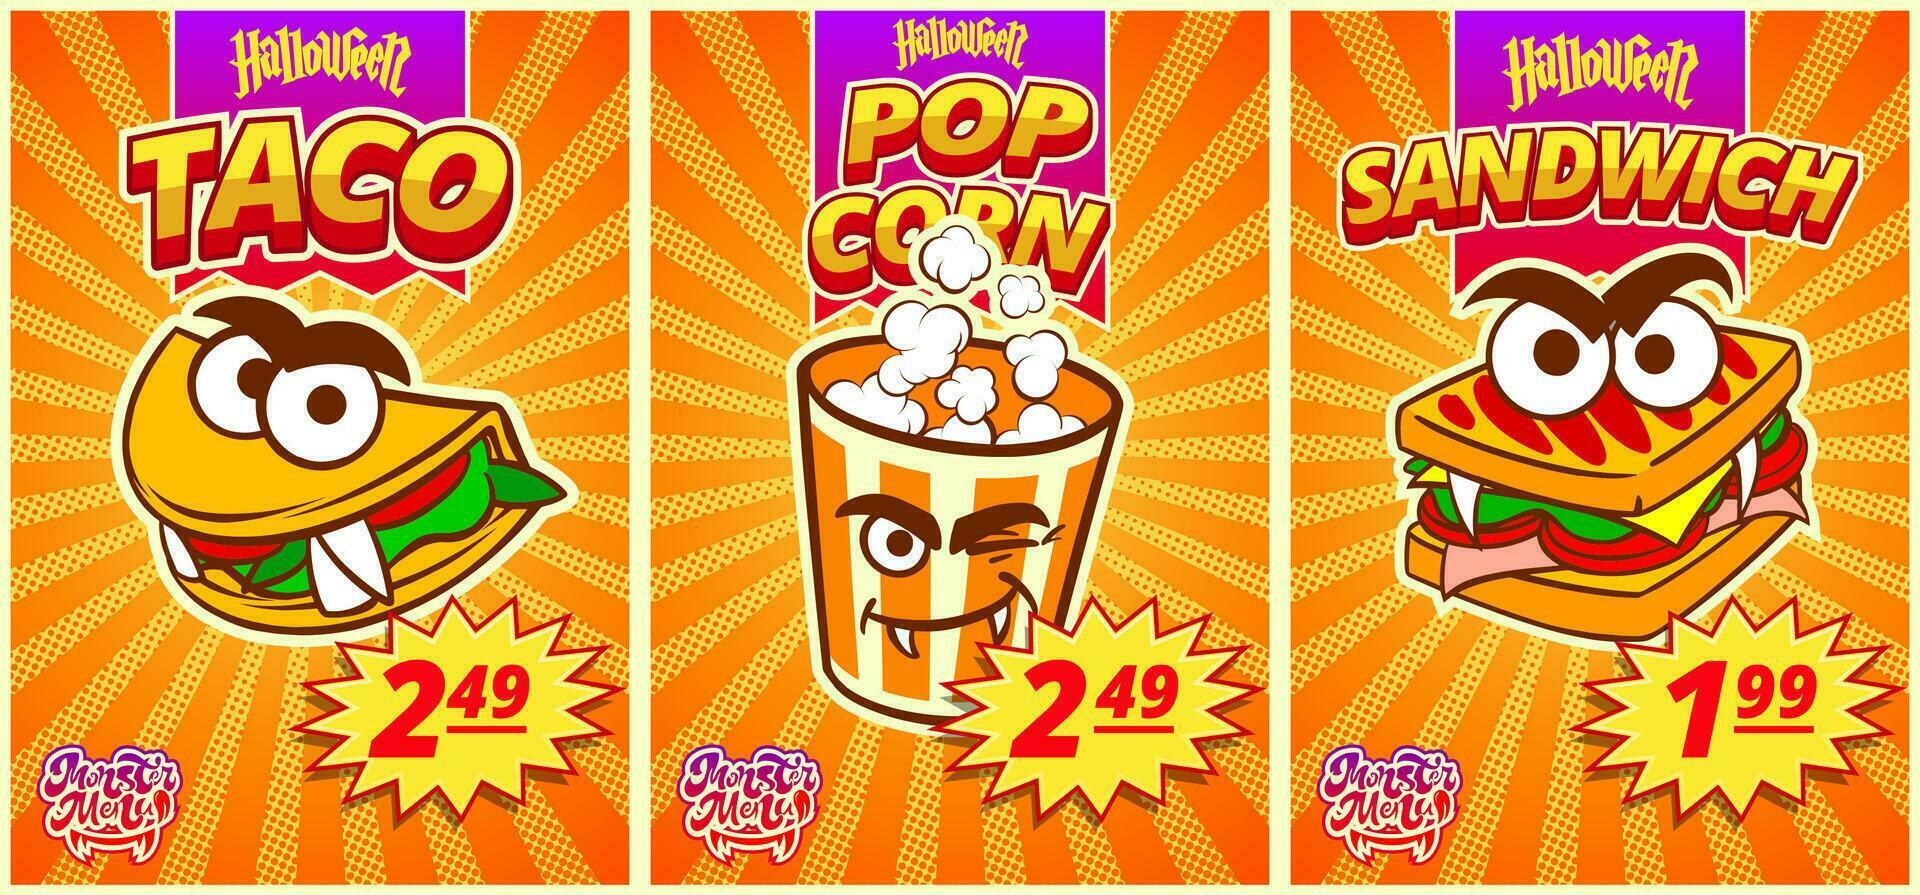 meny monster med popcorn, smörgåsar, tacos. horisontell affisch med pris märka för halloween snabb mat Kafé. vektor illustration.